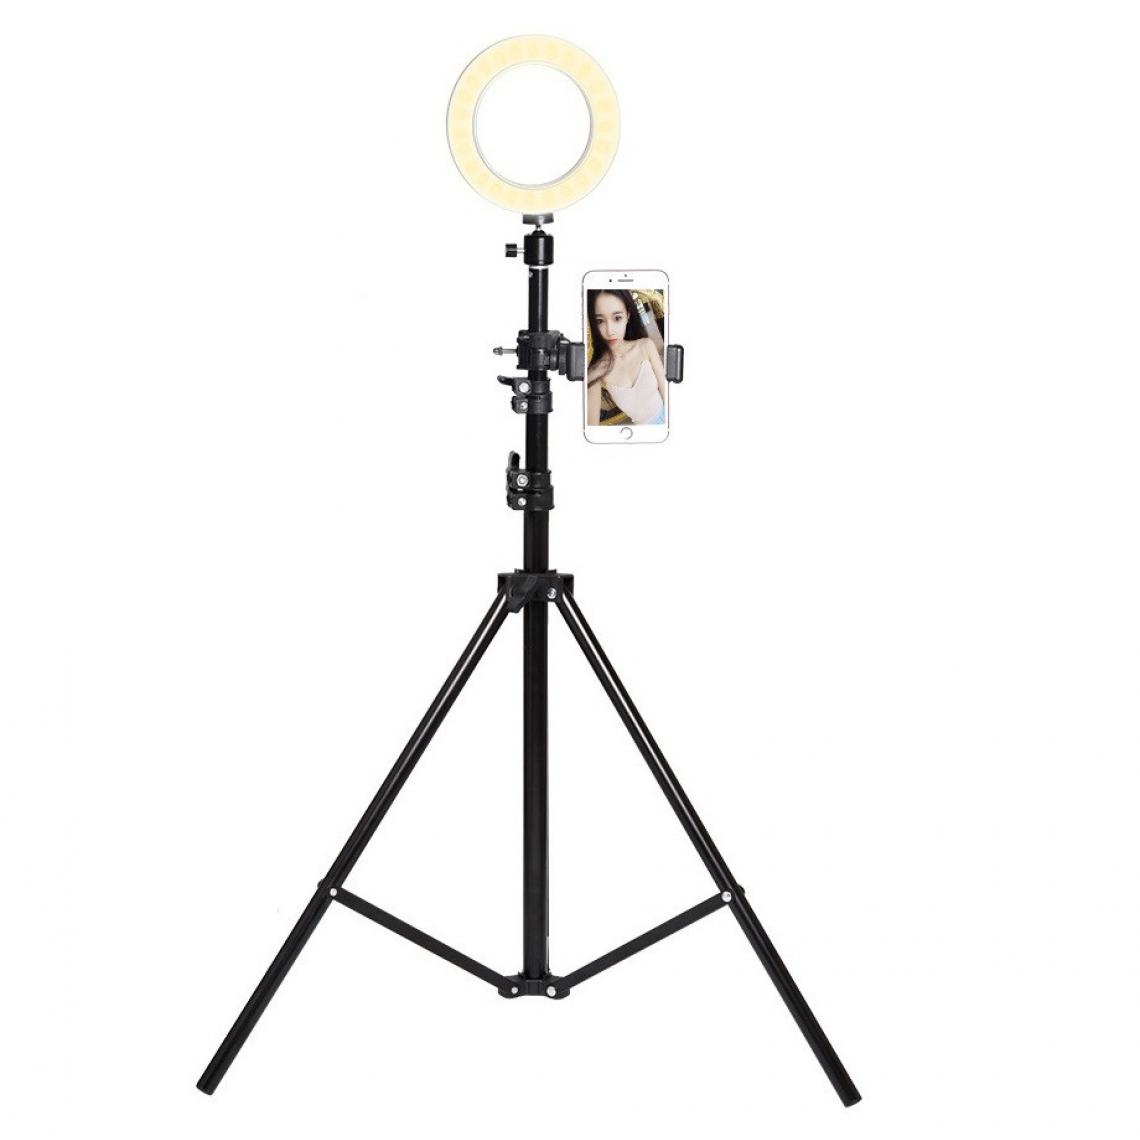 Shot - Trepied Telescopique avec Flash pour XIAOMI Mi 9T Smartphone Reglable Photo (NOIR) - Autres accessoires smartphone